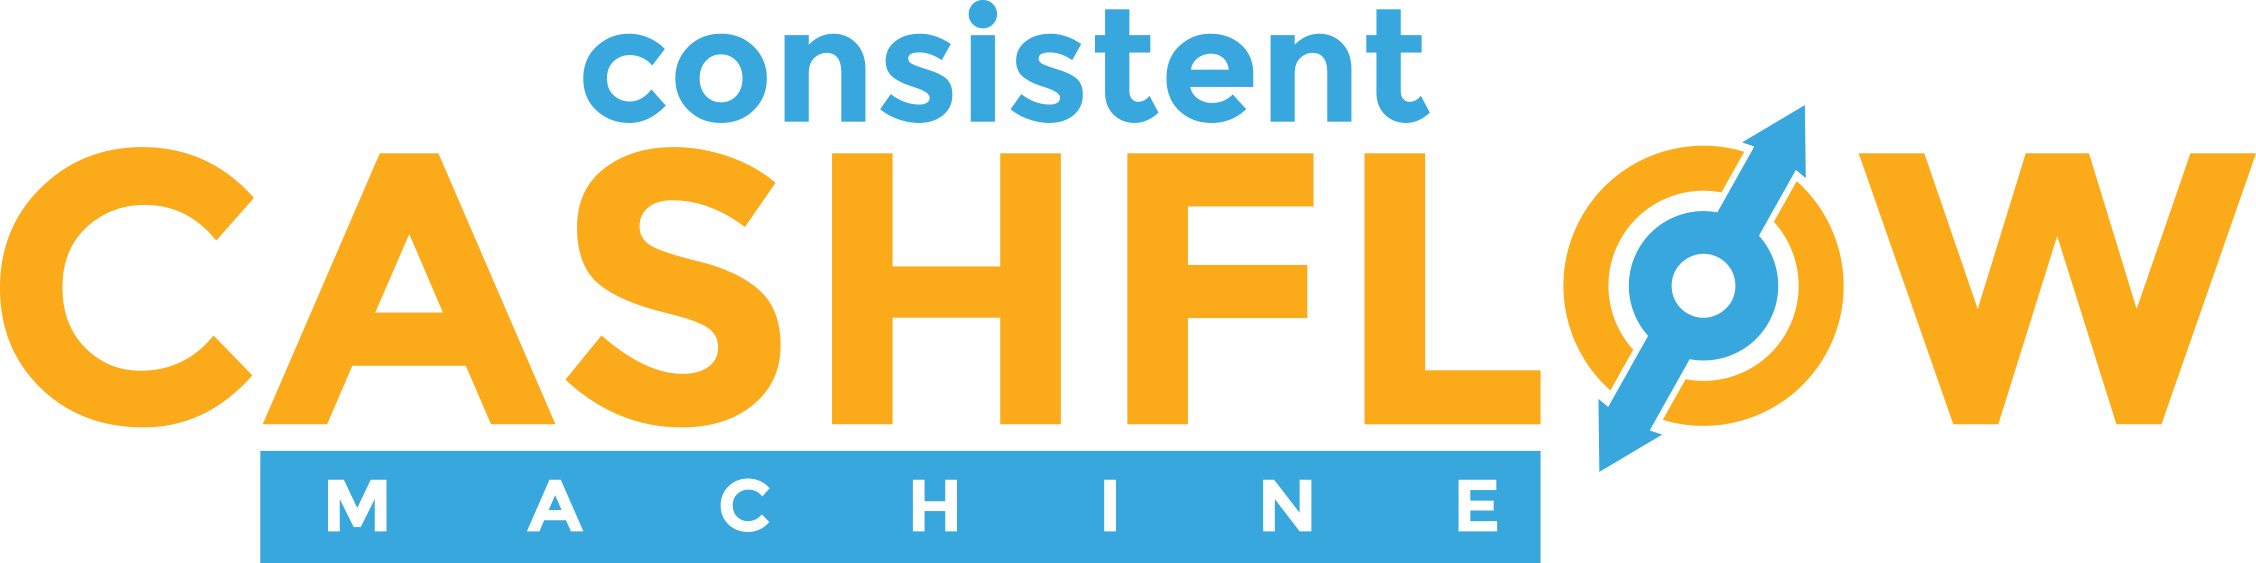 Consistent_Cashflow_Machine_Logo